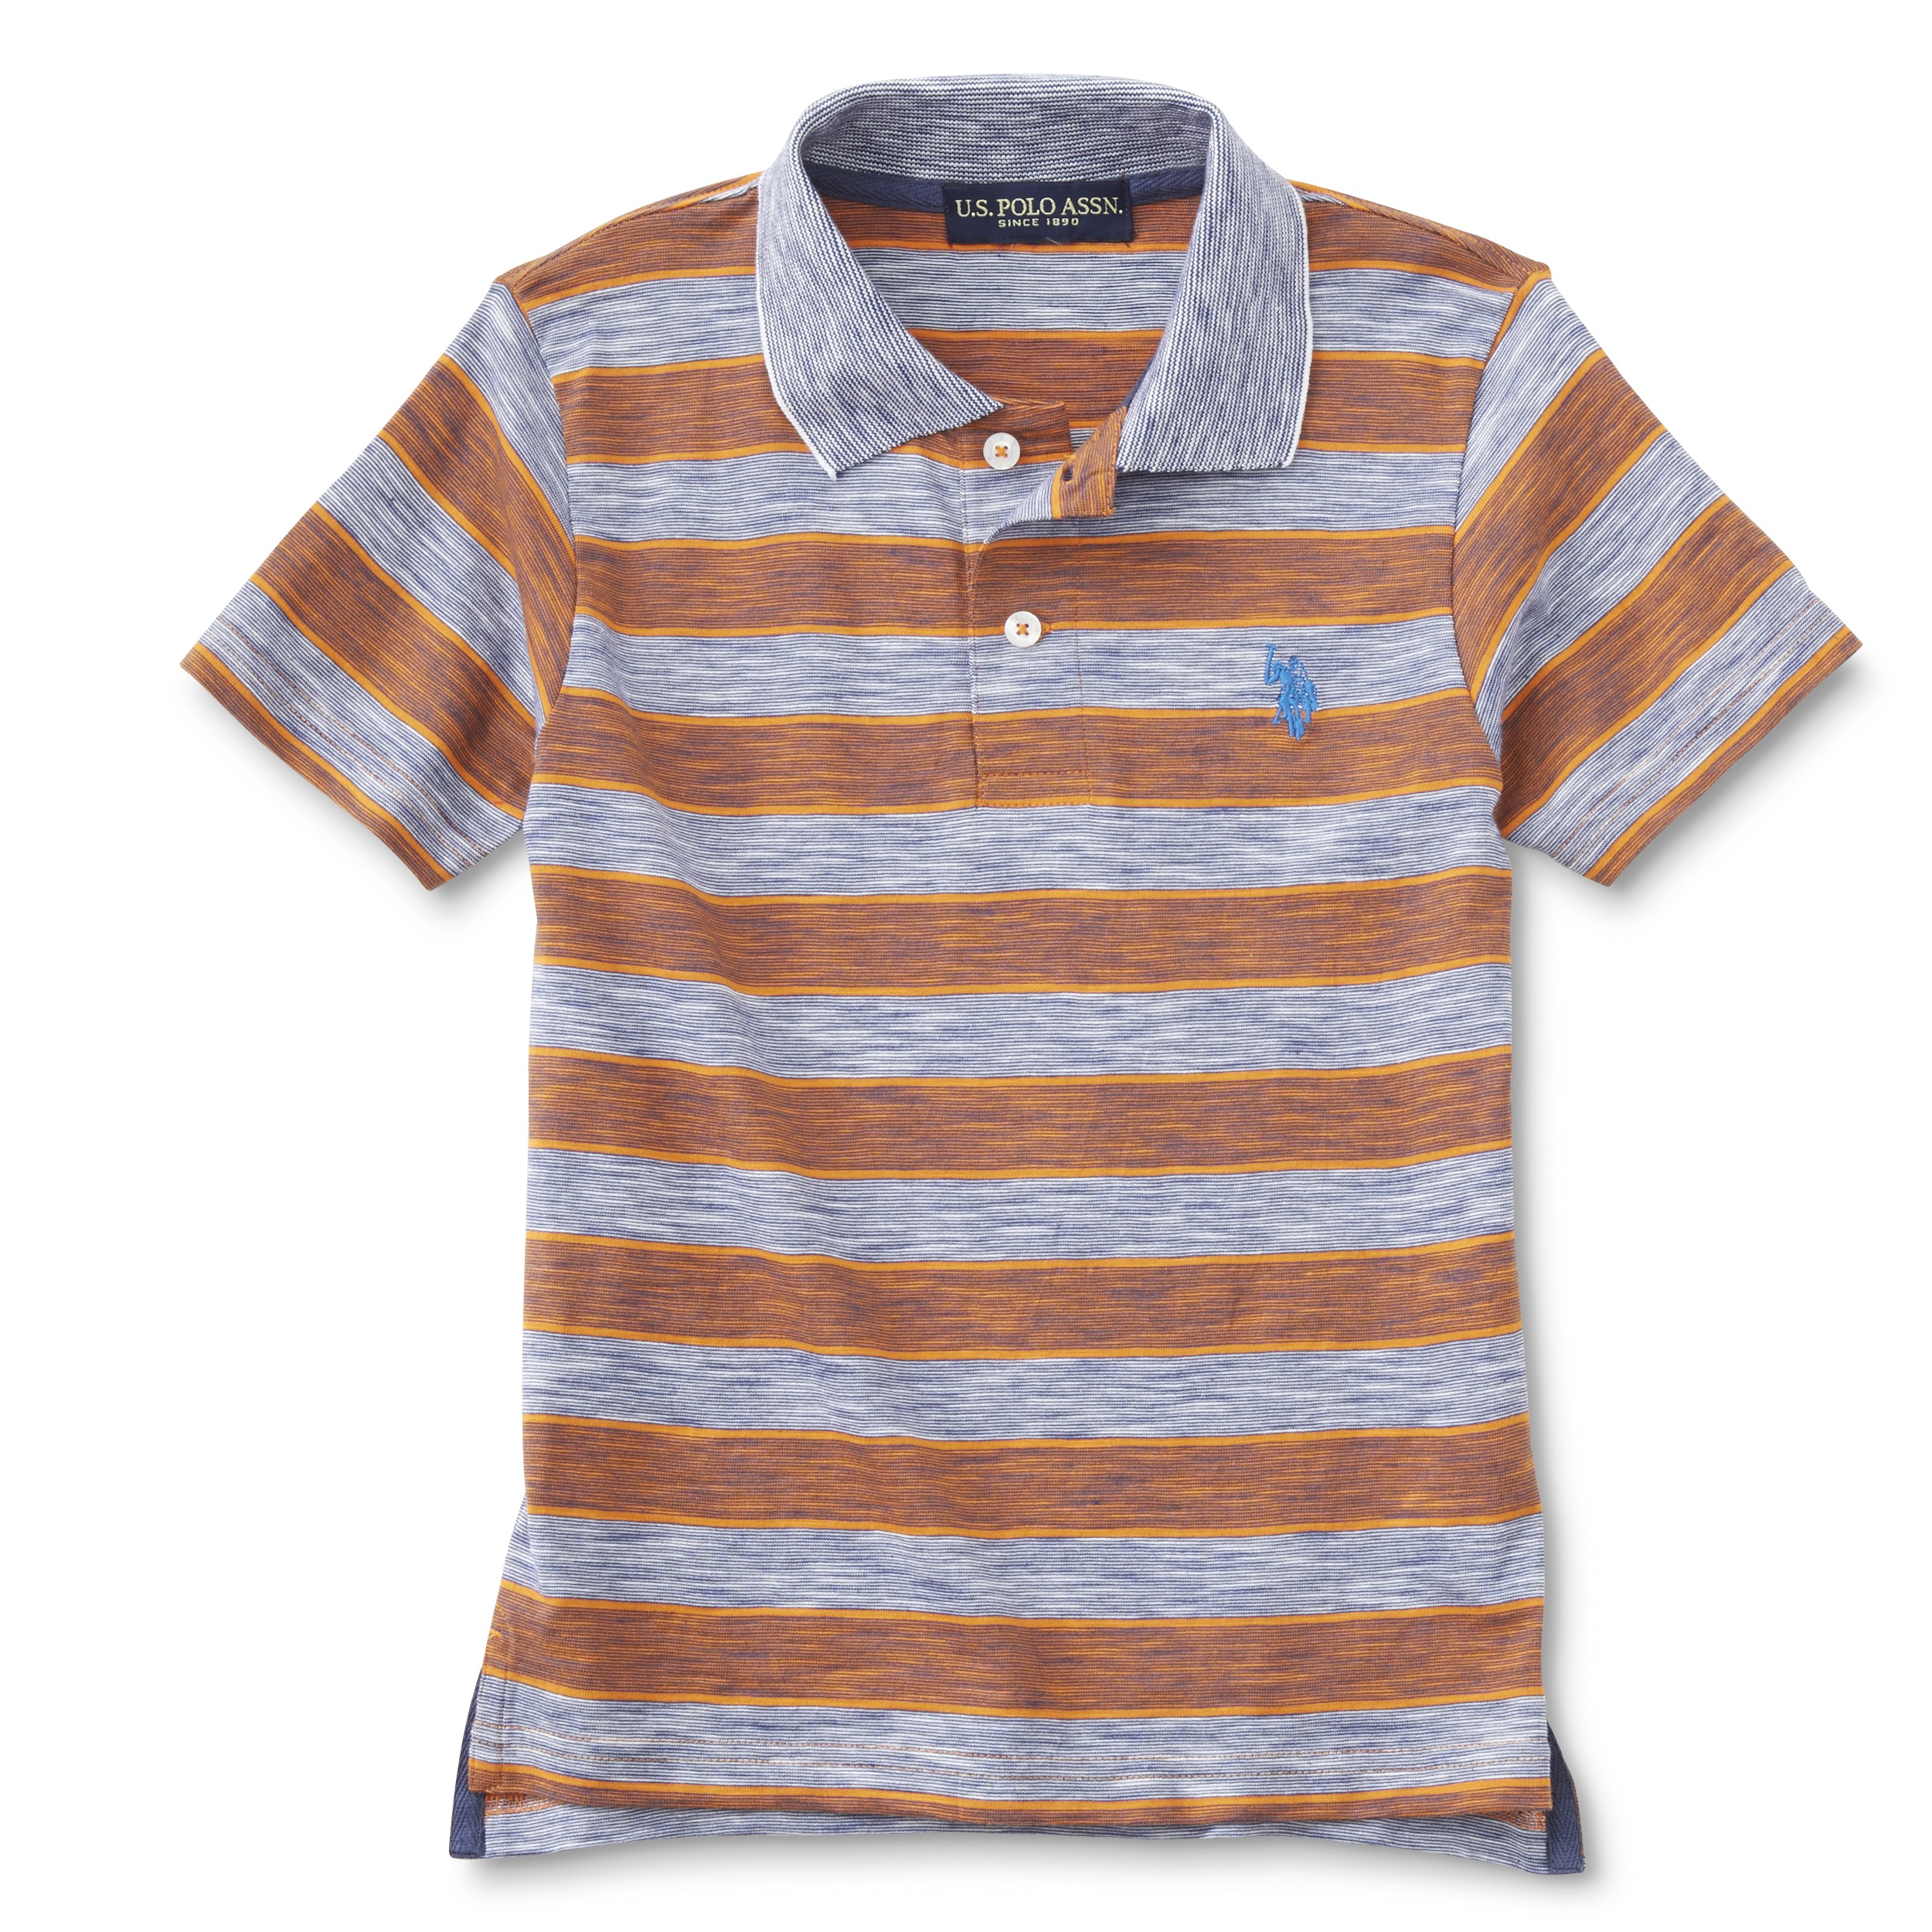 U.S. Polo Assn. Boy's Polo Shirt - Striped